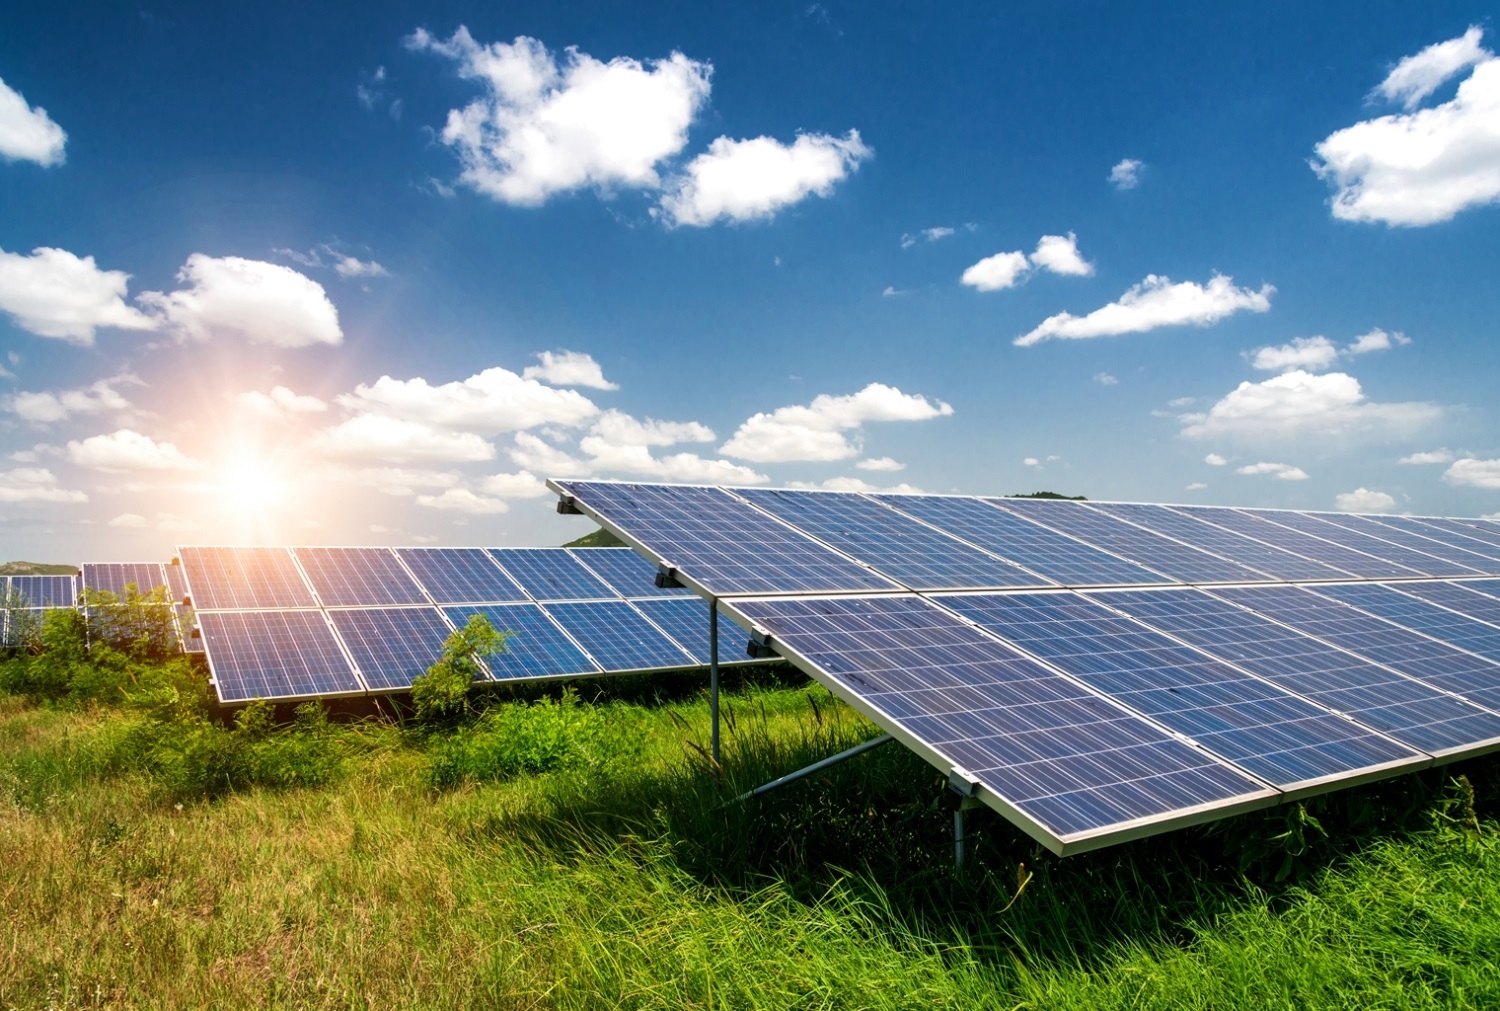 Engie và P&G hợp tác trong dự án năng lượng mặt trời mới ở Texas